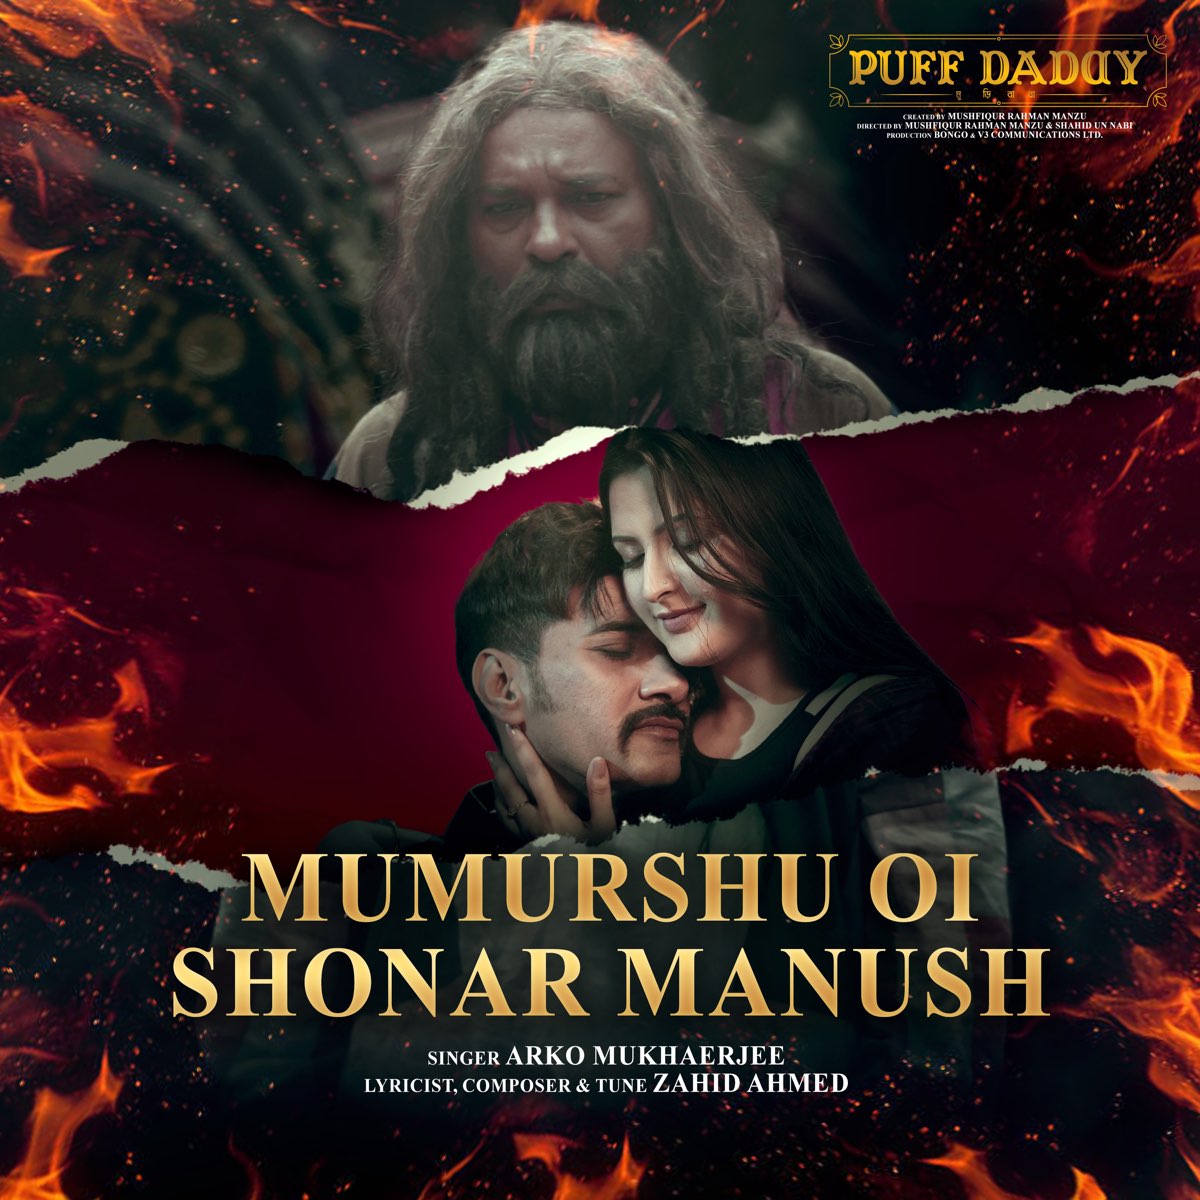 ‎Mumurshu Oi Shonar Manush - Single - Album by Arko Mukhaerjee - Apple Music